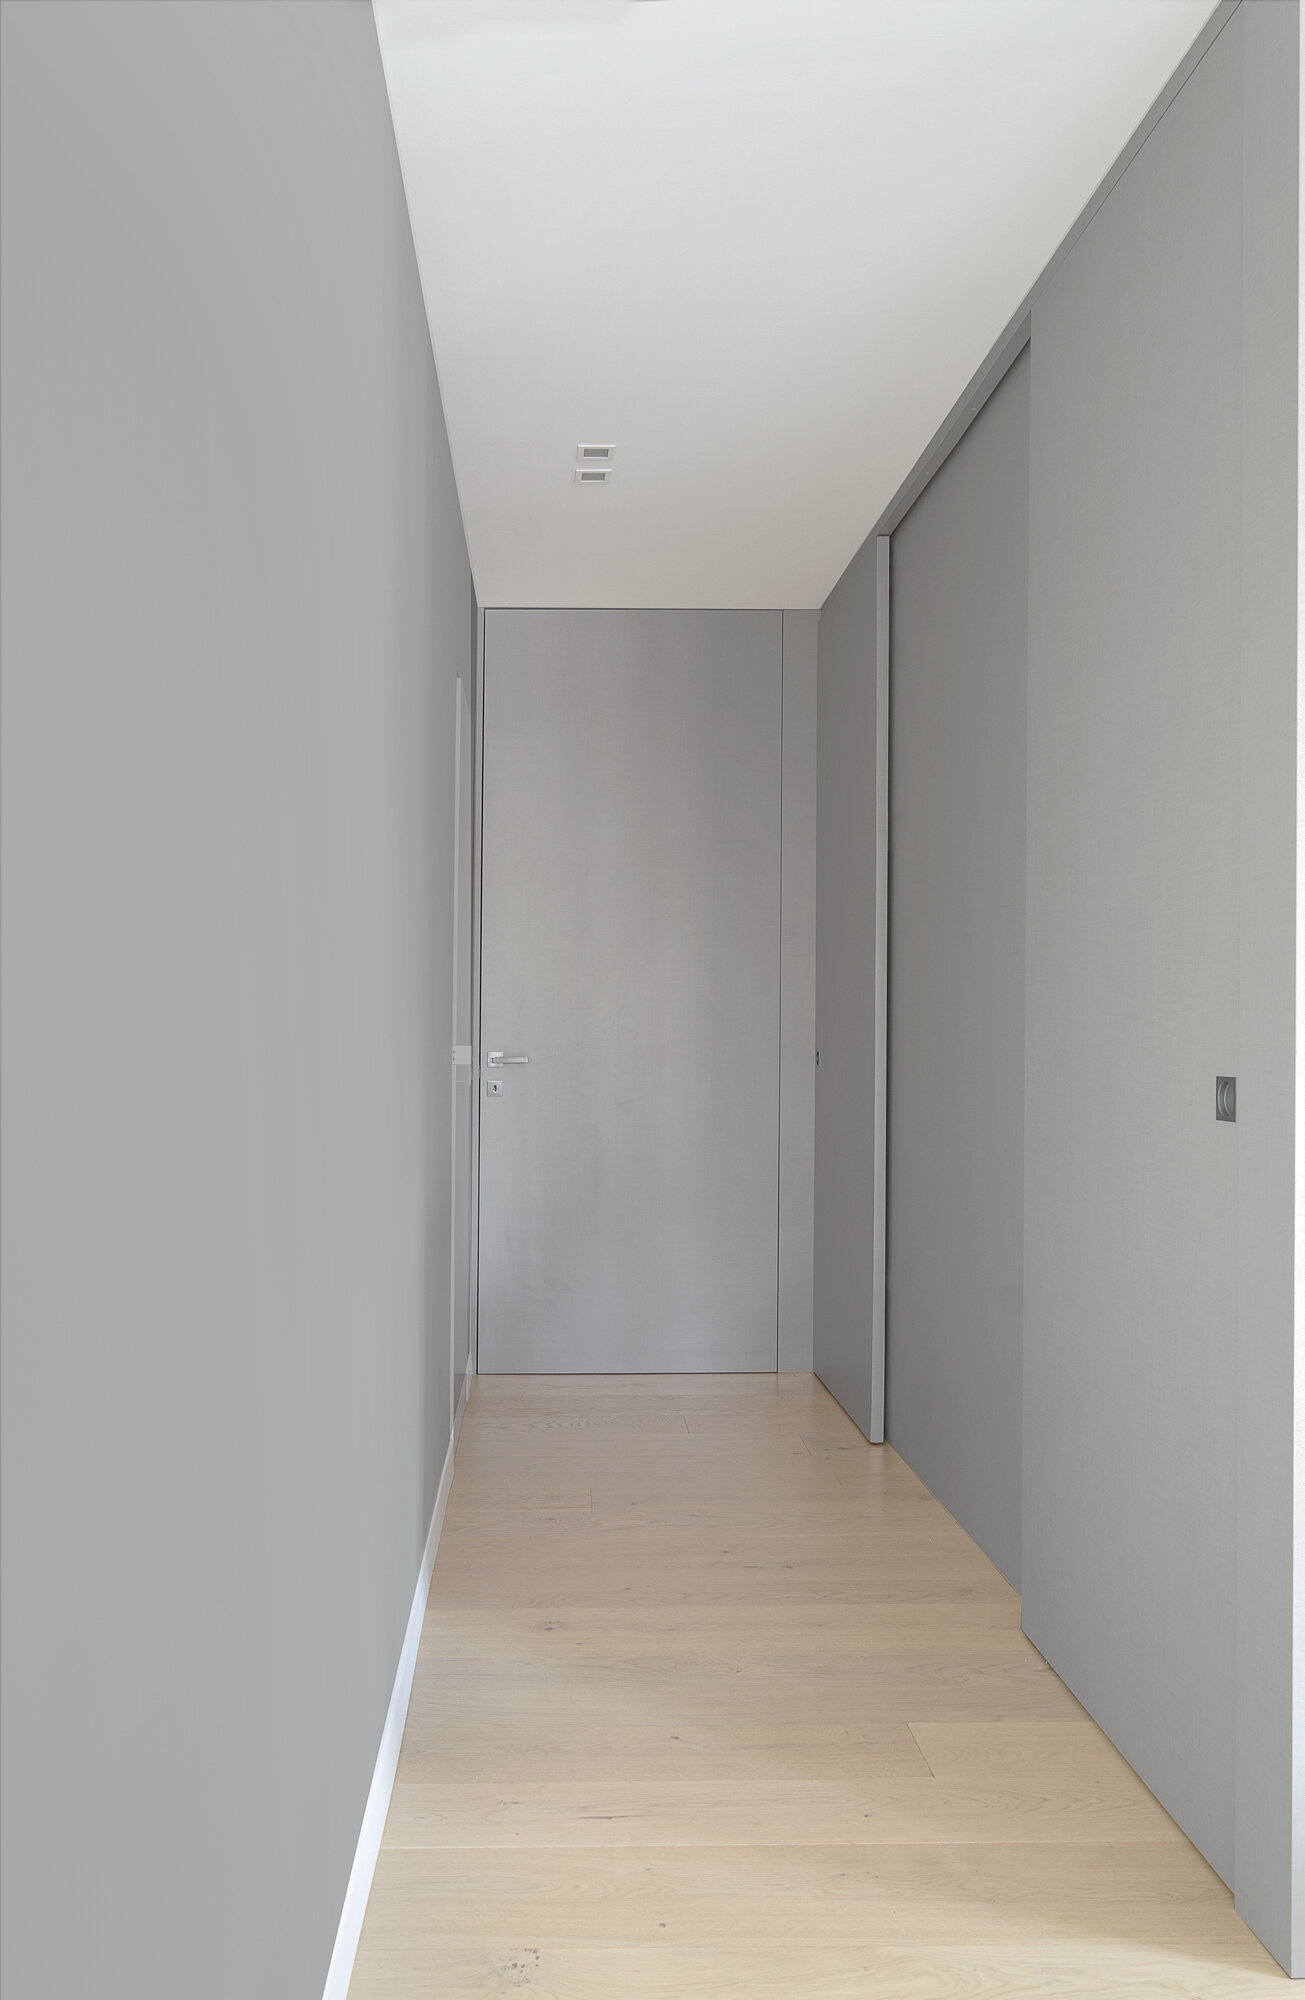 locatelli-pepato-studio-architettura-padova-appartamento-loft-ristrutturazione-interior-design-open-space-t-10a.jpg